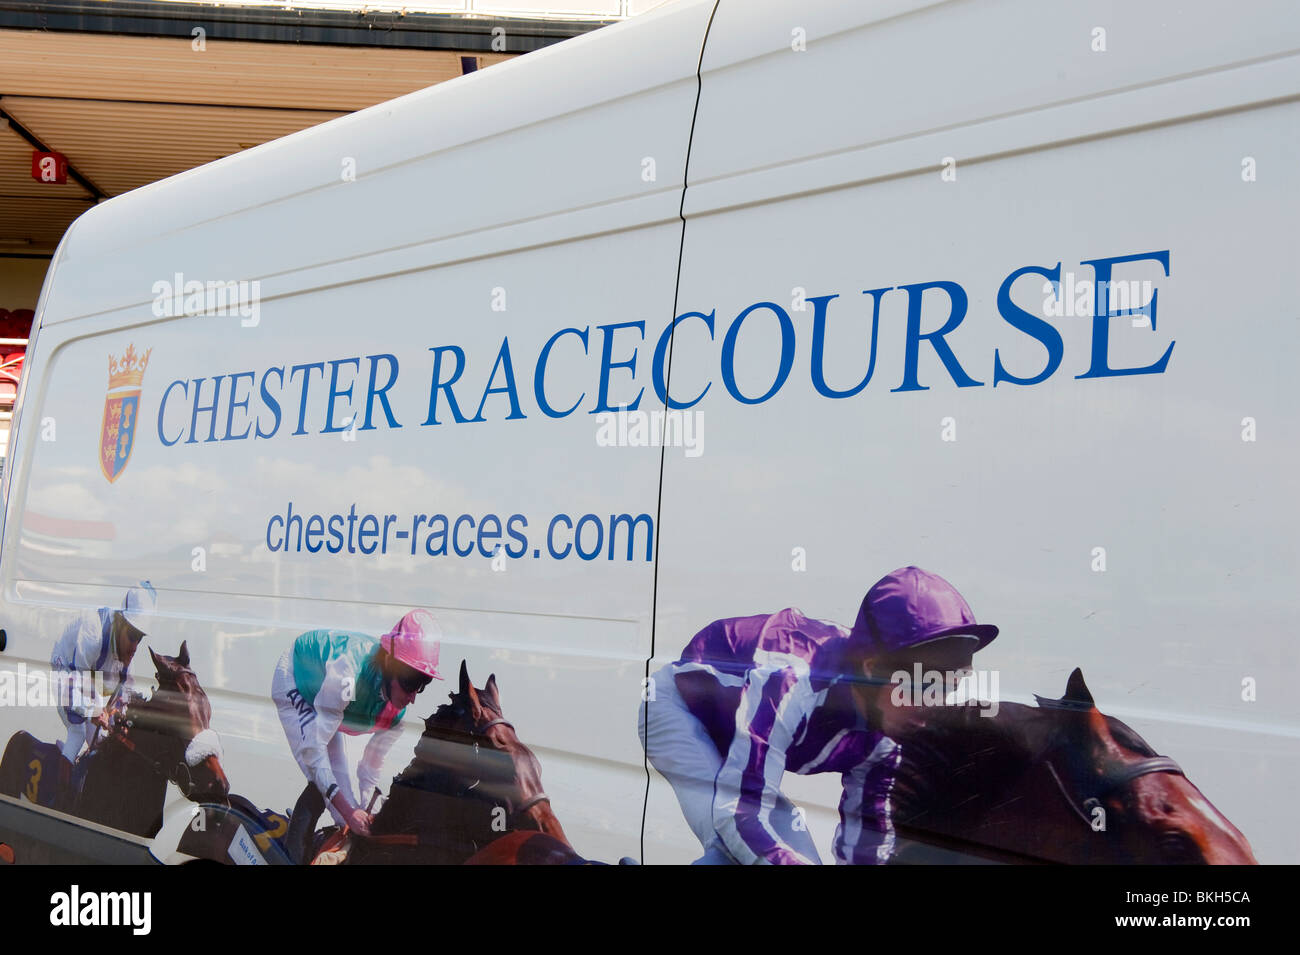 Chester Racecourse UK Stock Photo